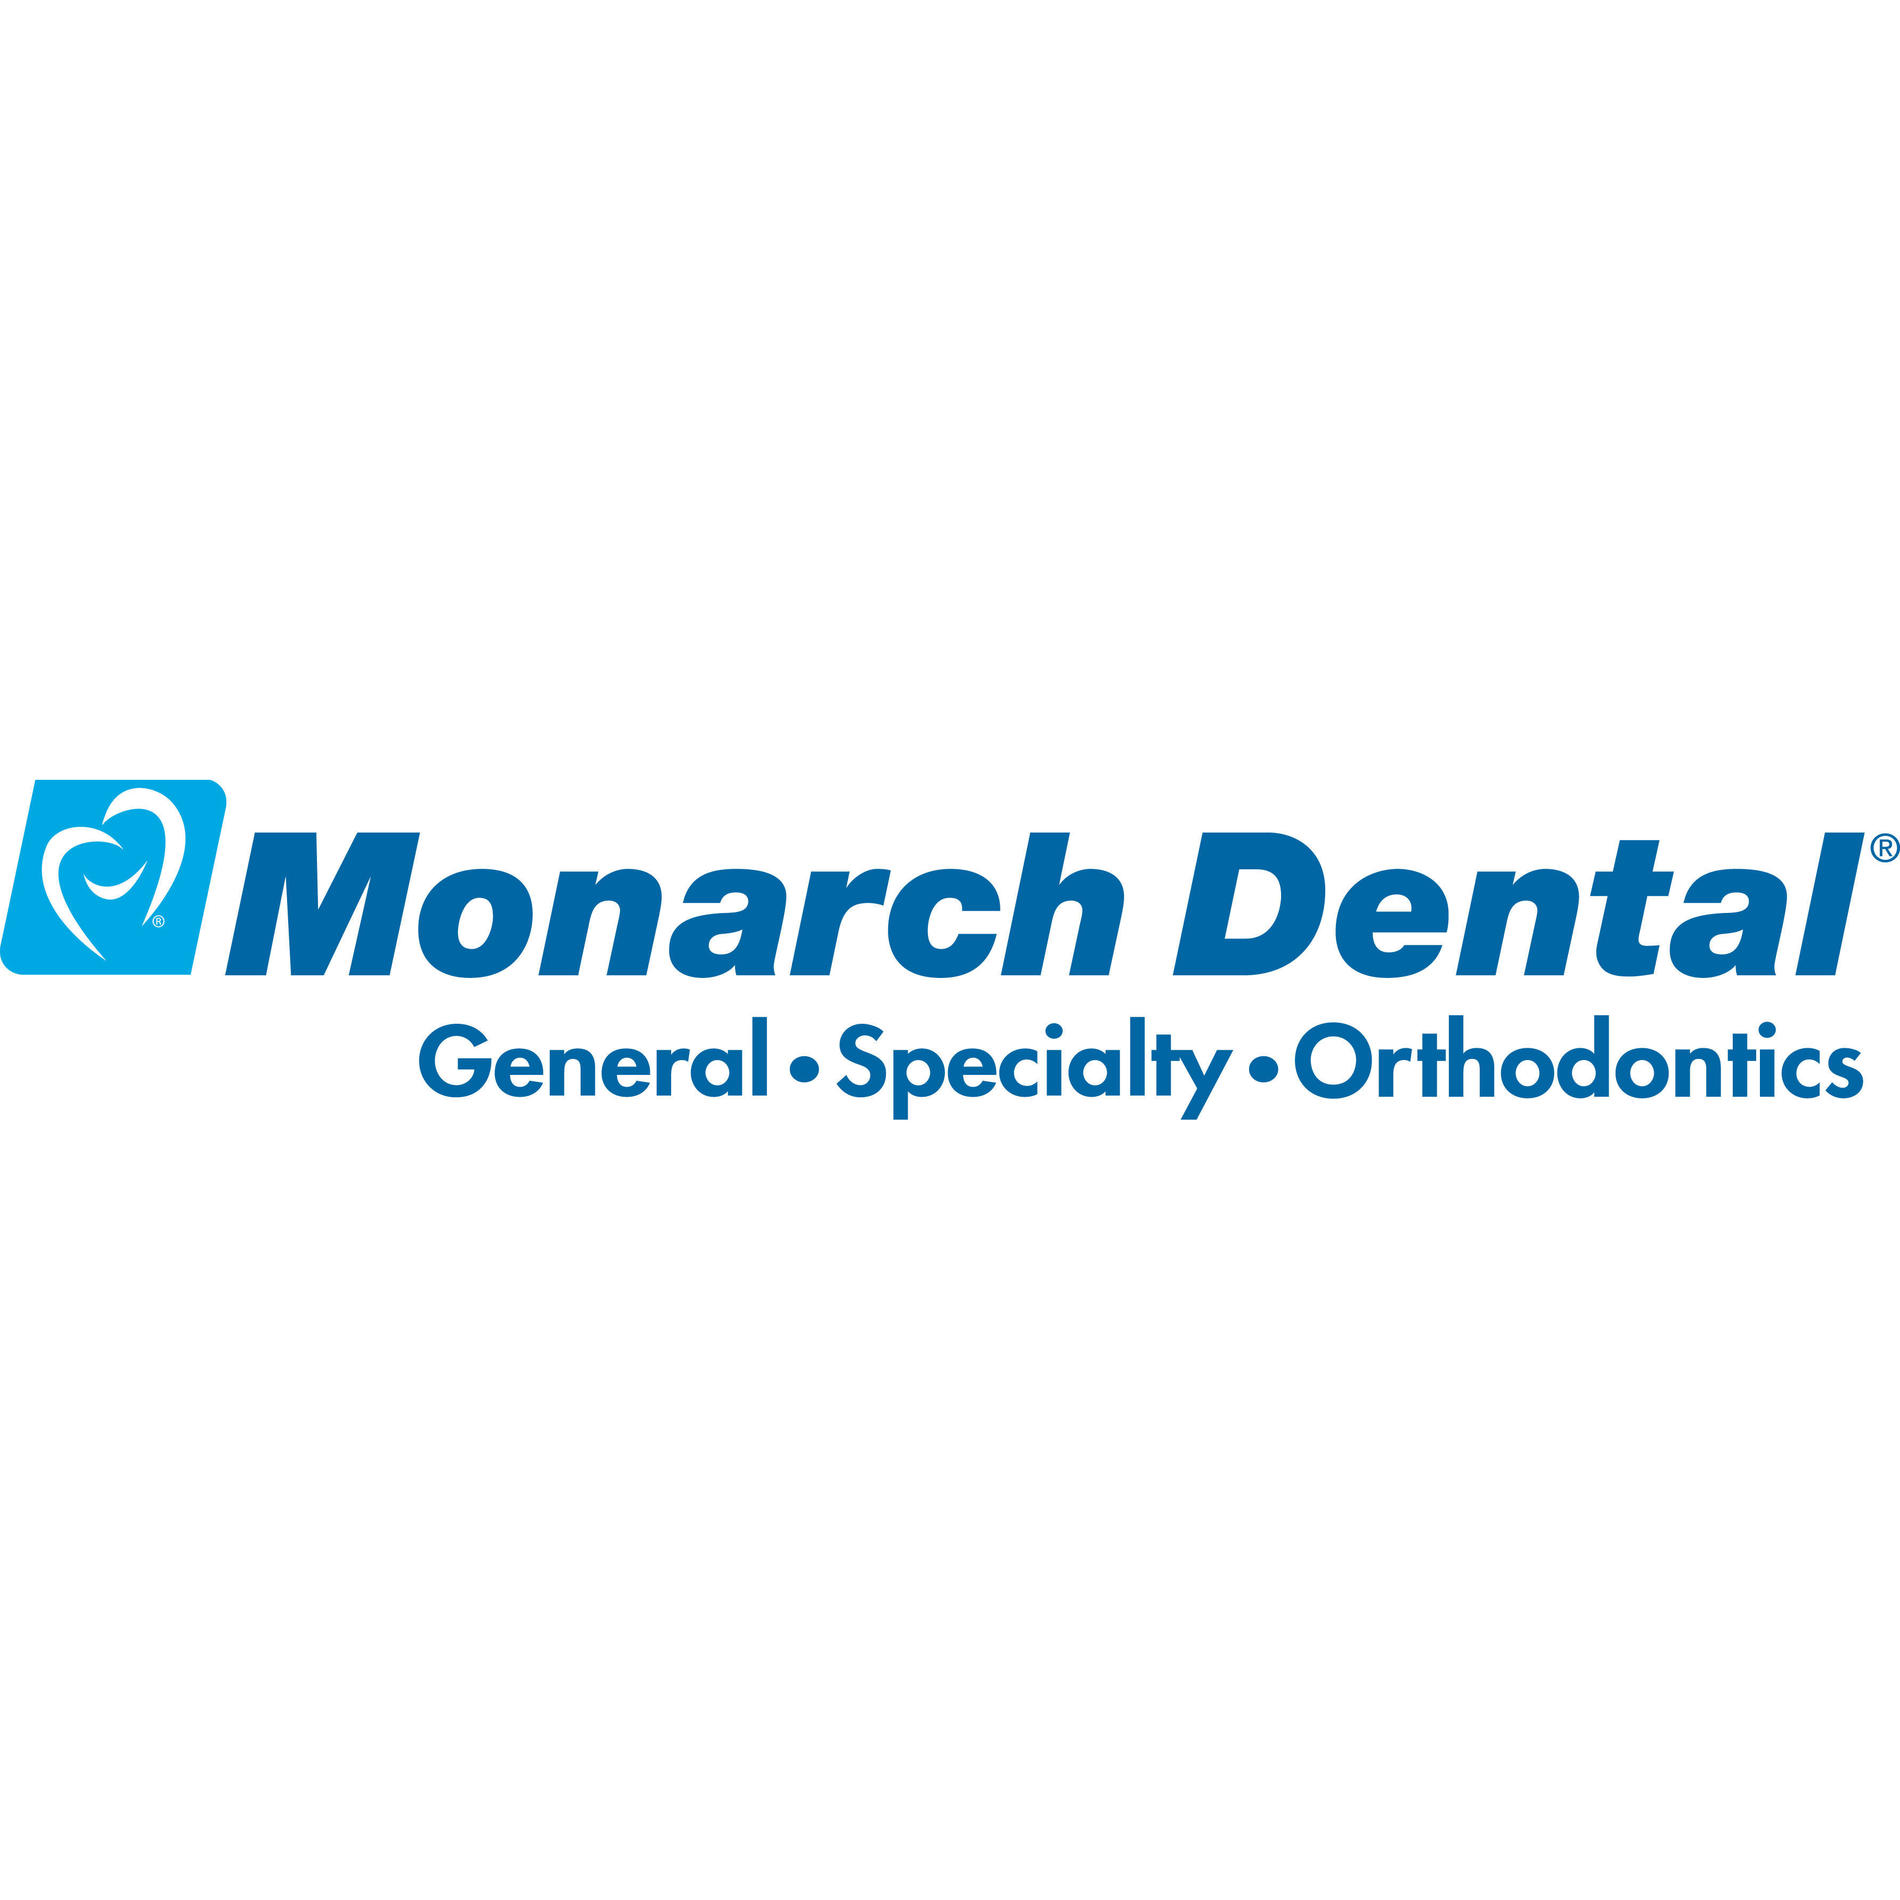 James A. Holman, Jr., DDS - Monarch Dental